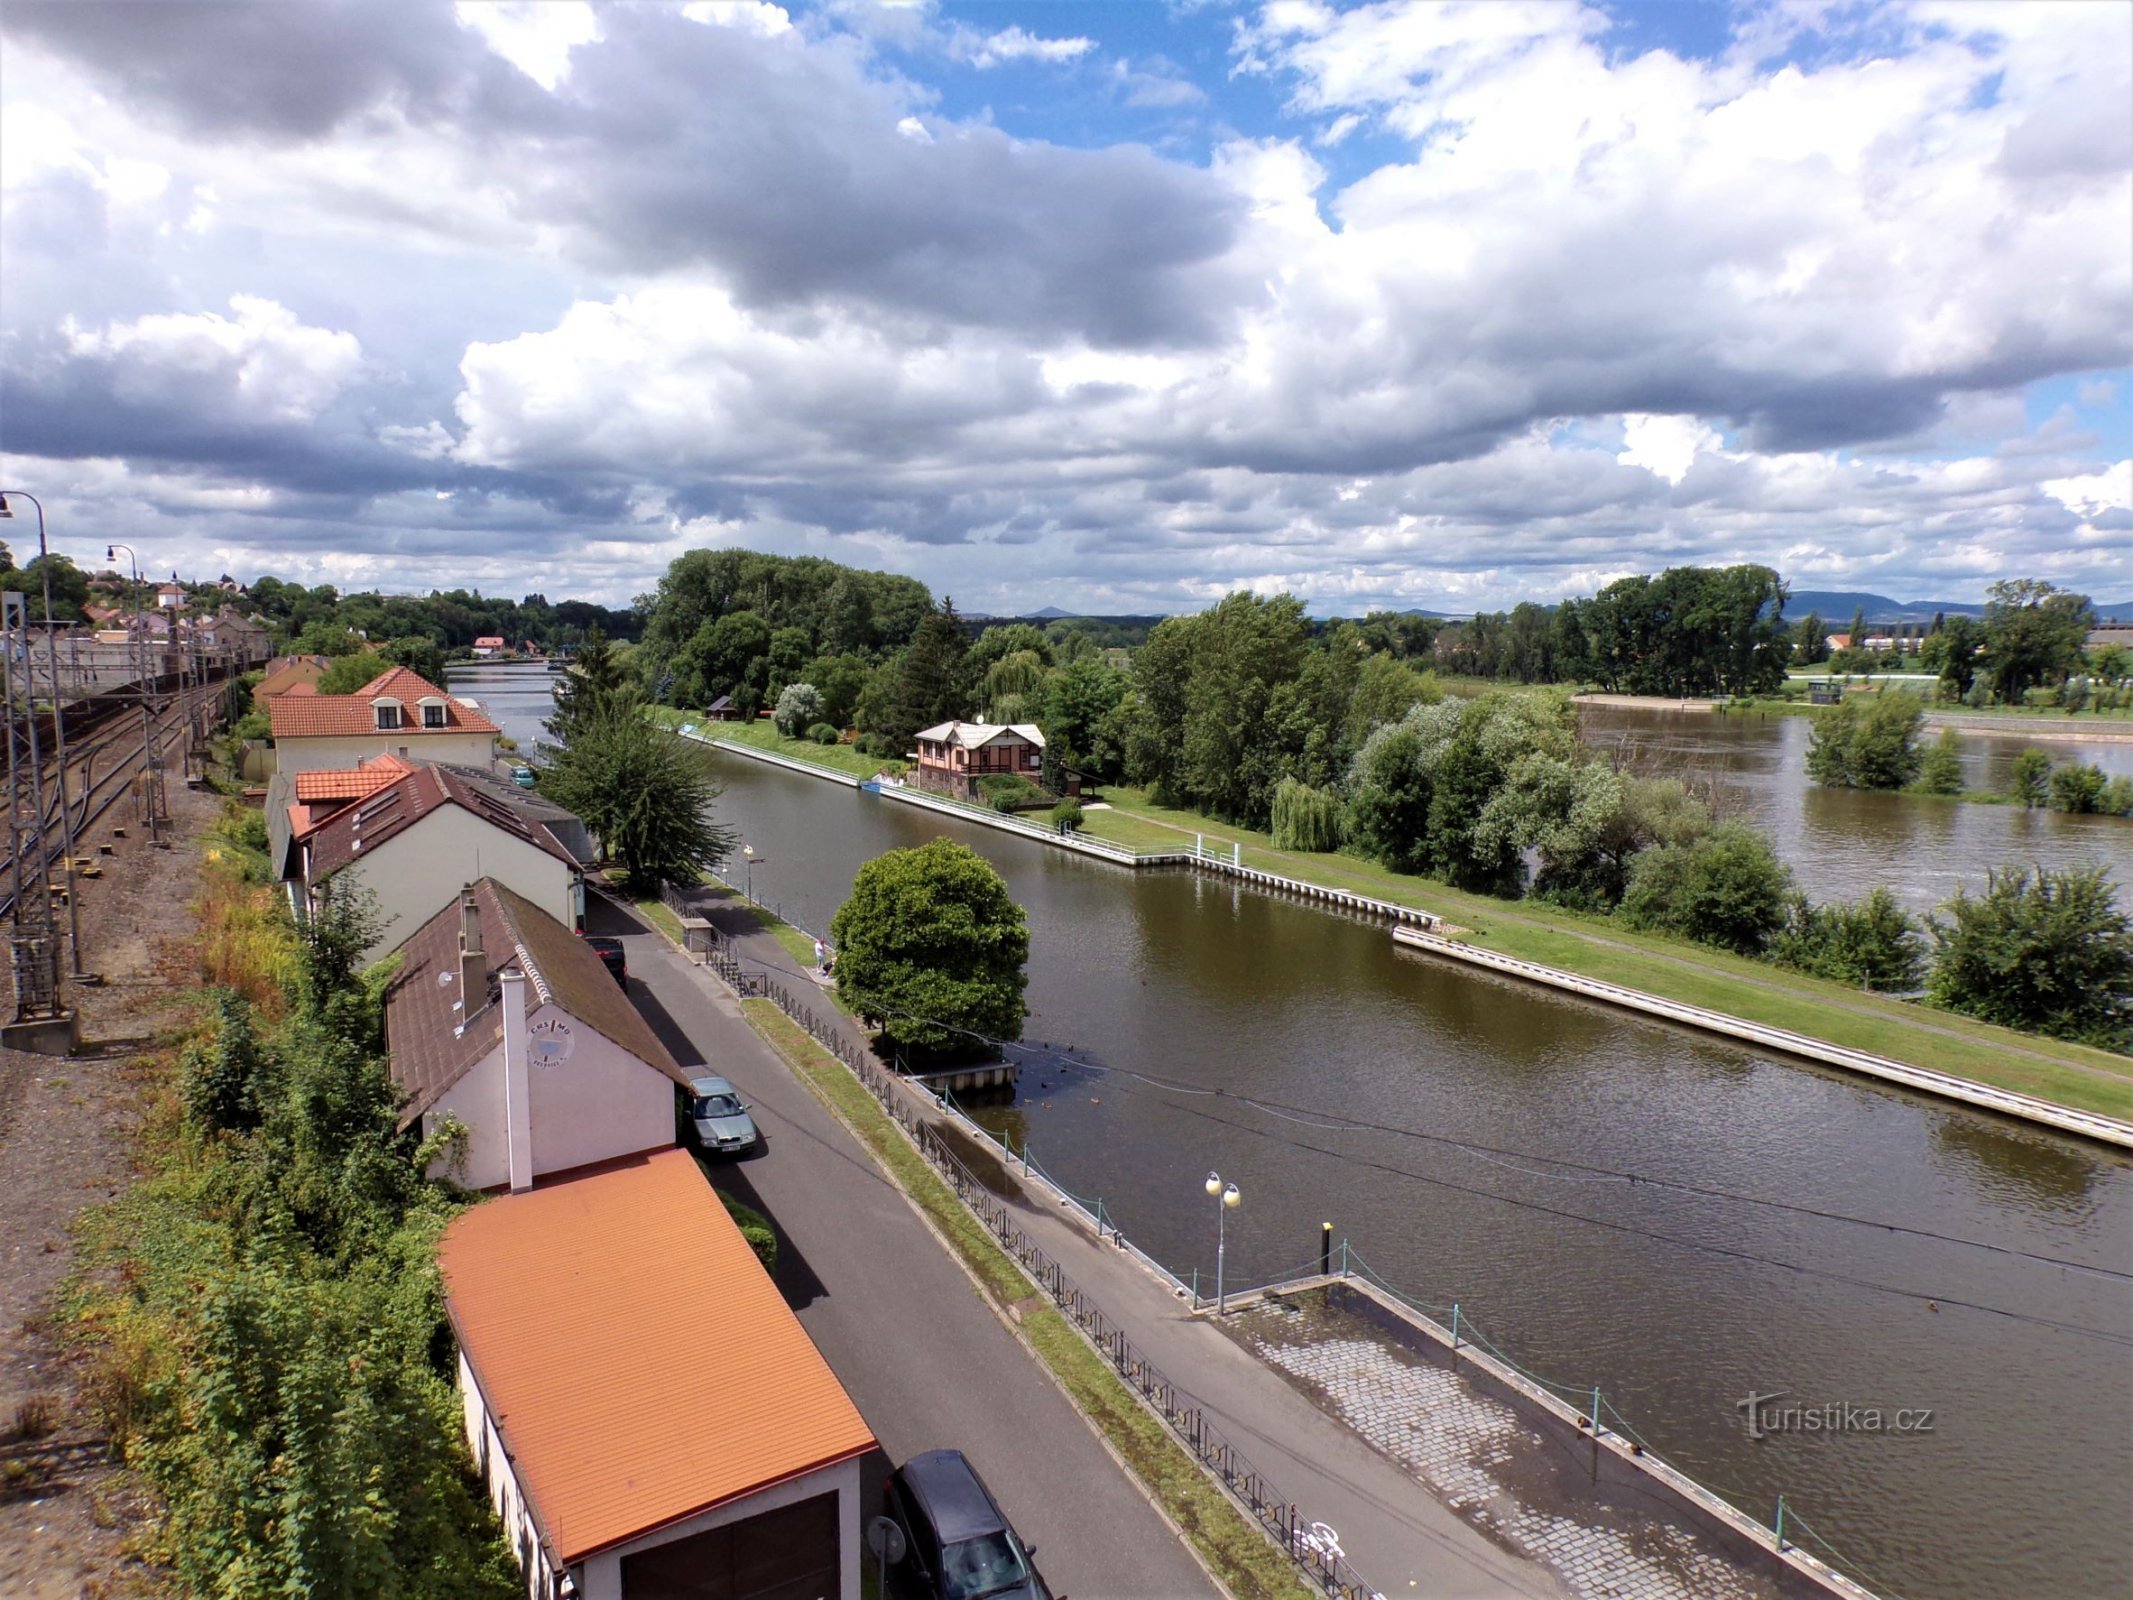 Vista de la isla desde el puente Ervín Špindler (Roudnice nad Labem, 9.7.2021/XNUMX/XNUMX)